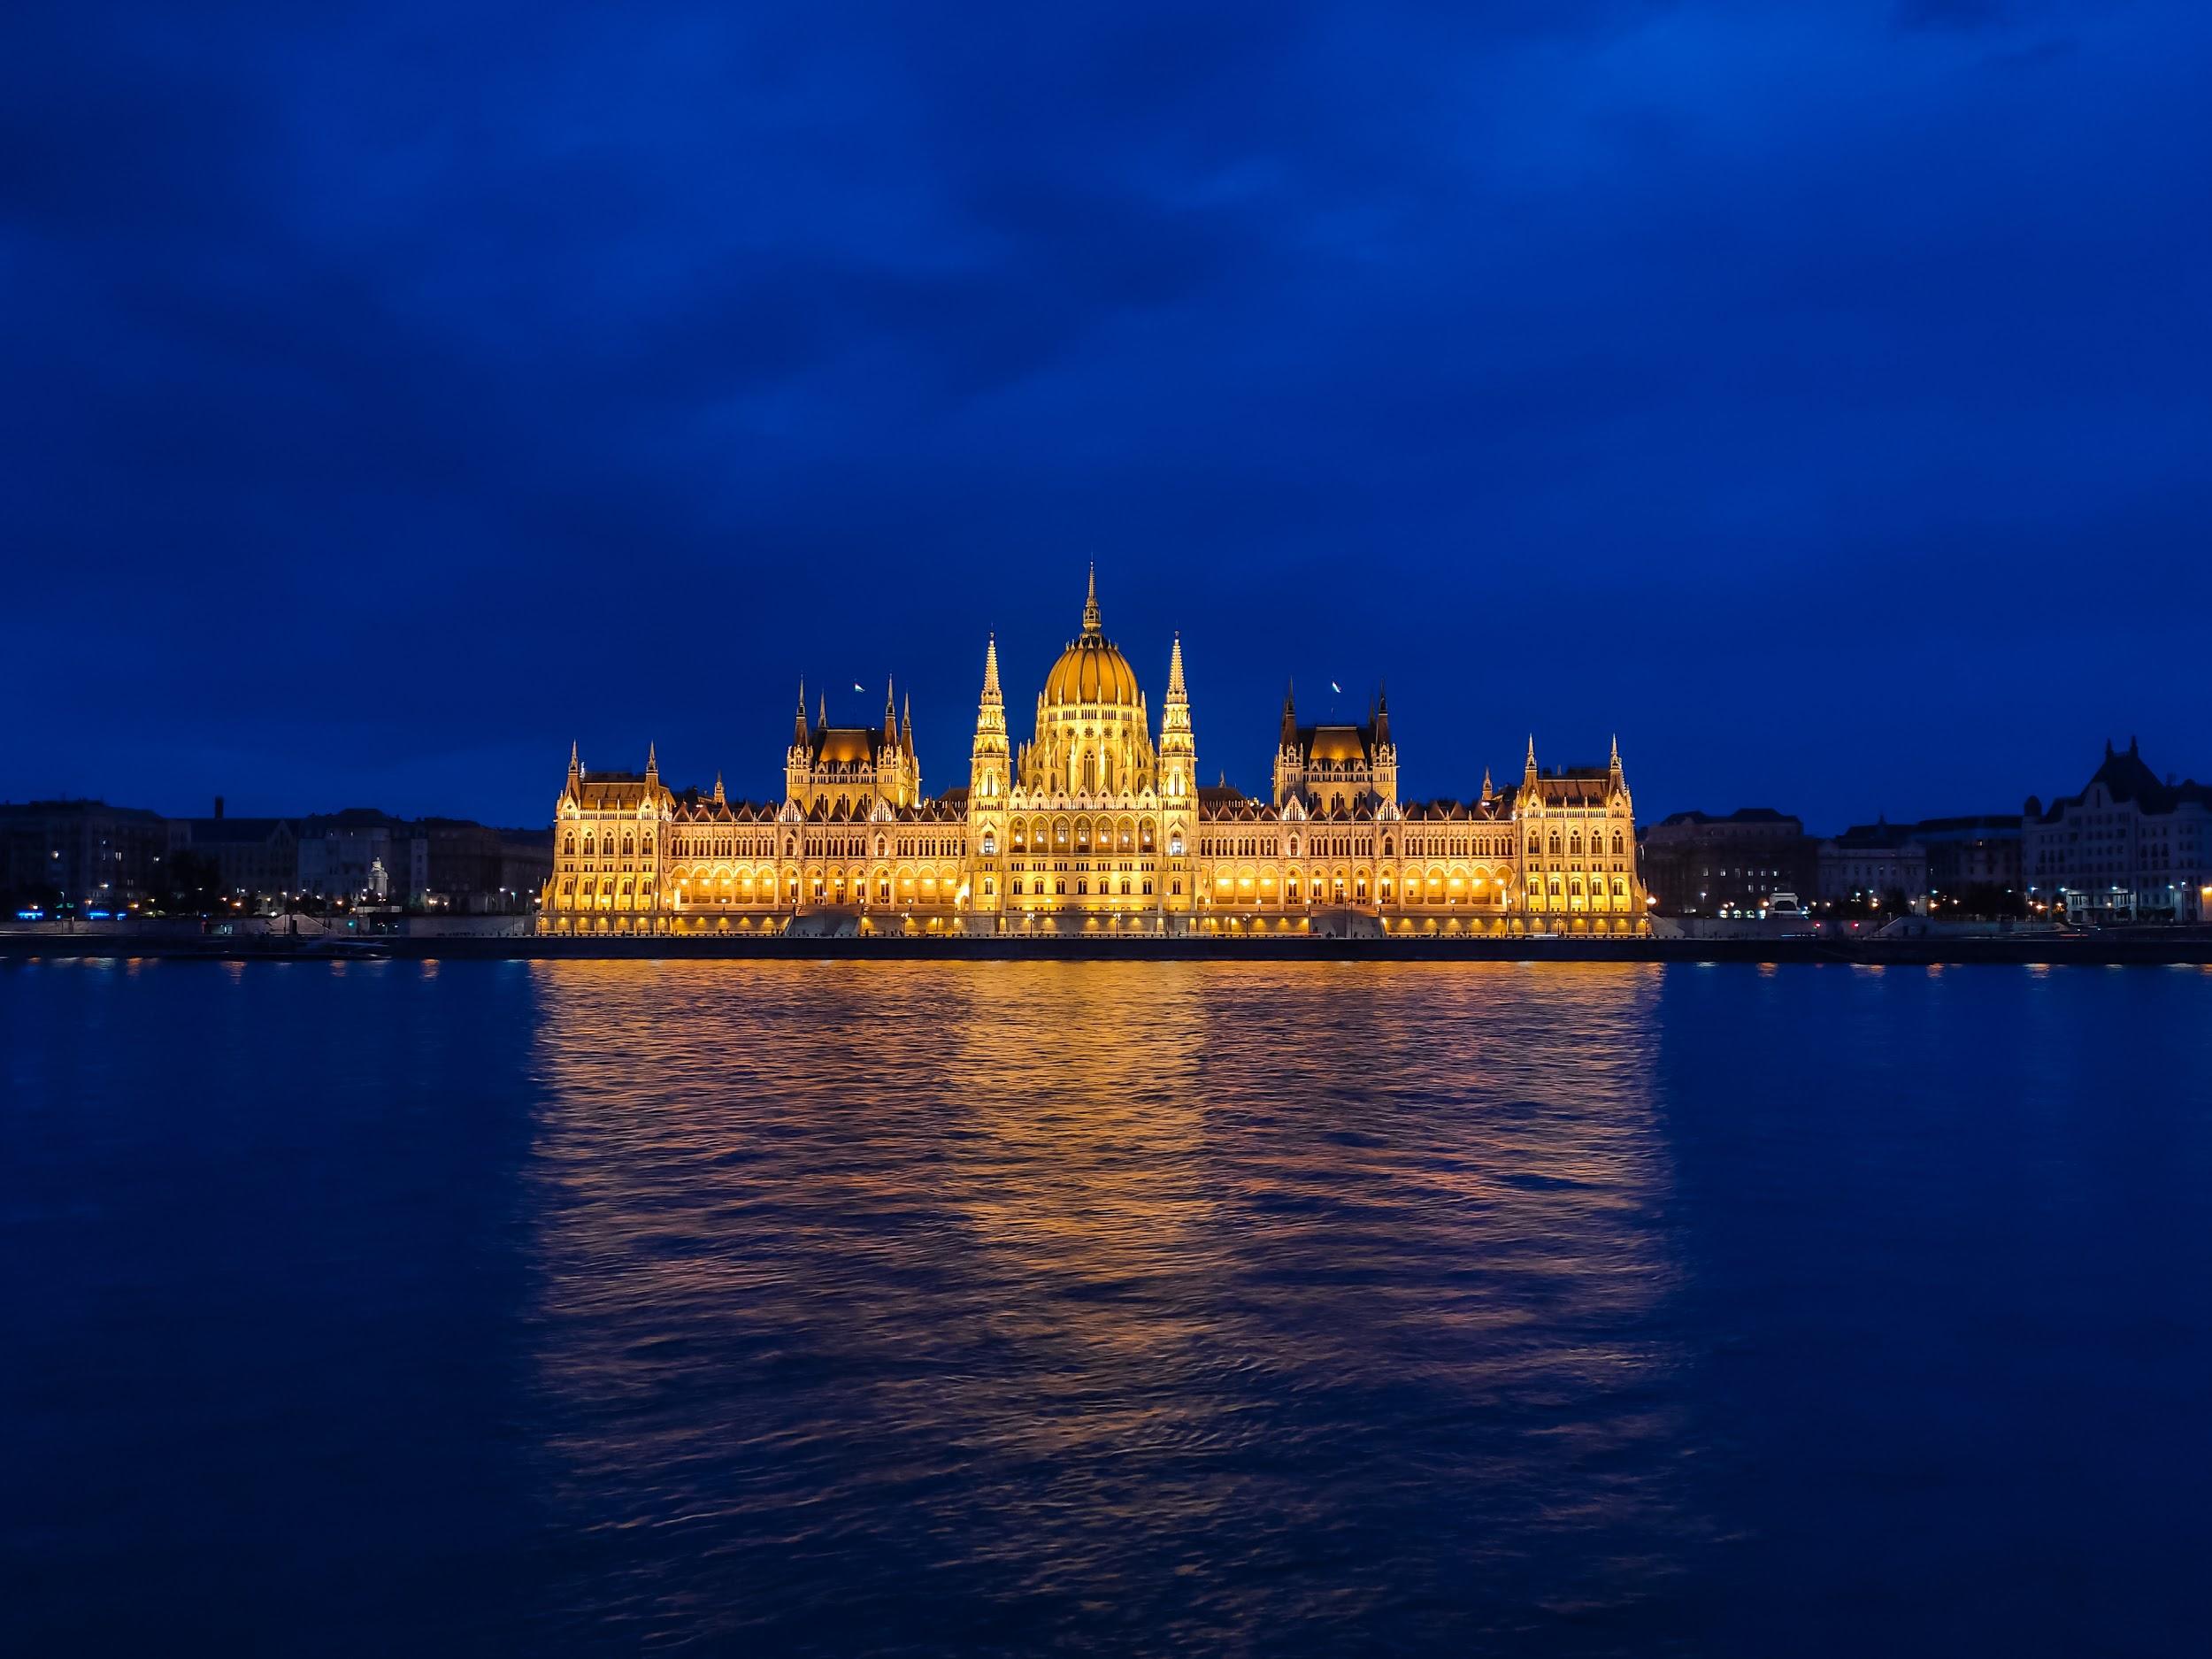 Tòa nhà Quốc hội Hungary đẹp tráng lệ khi được chụp chế độ phơi sáng bởi Realme 5 Pro